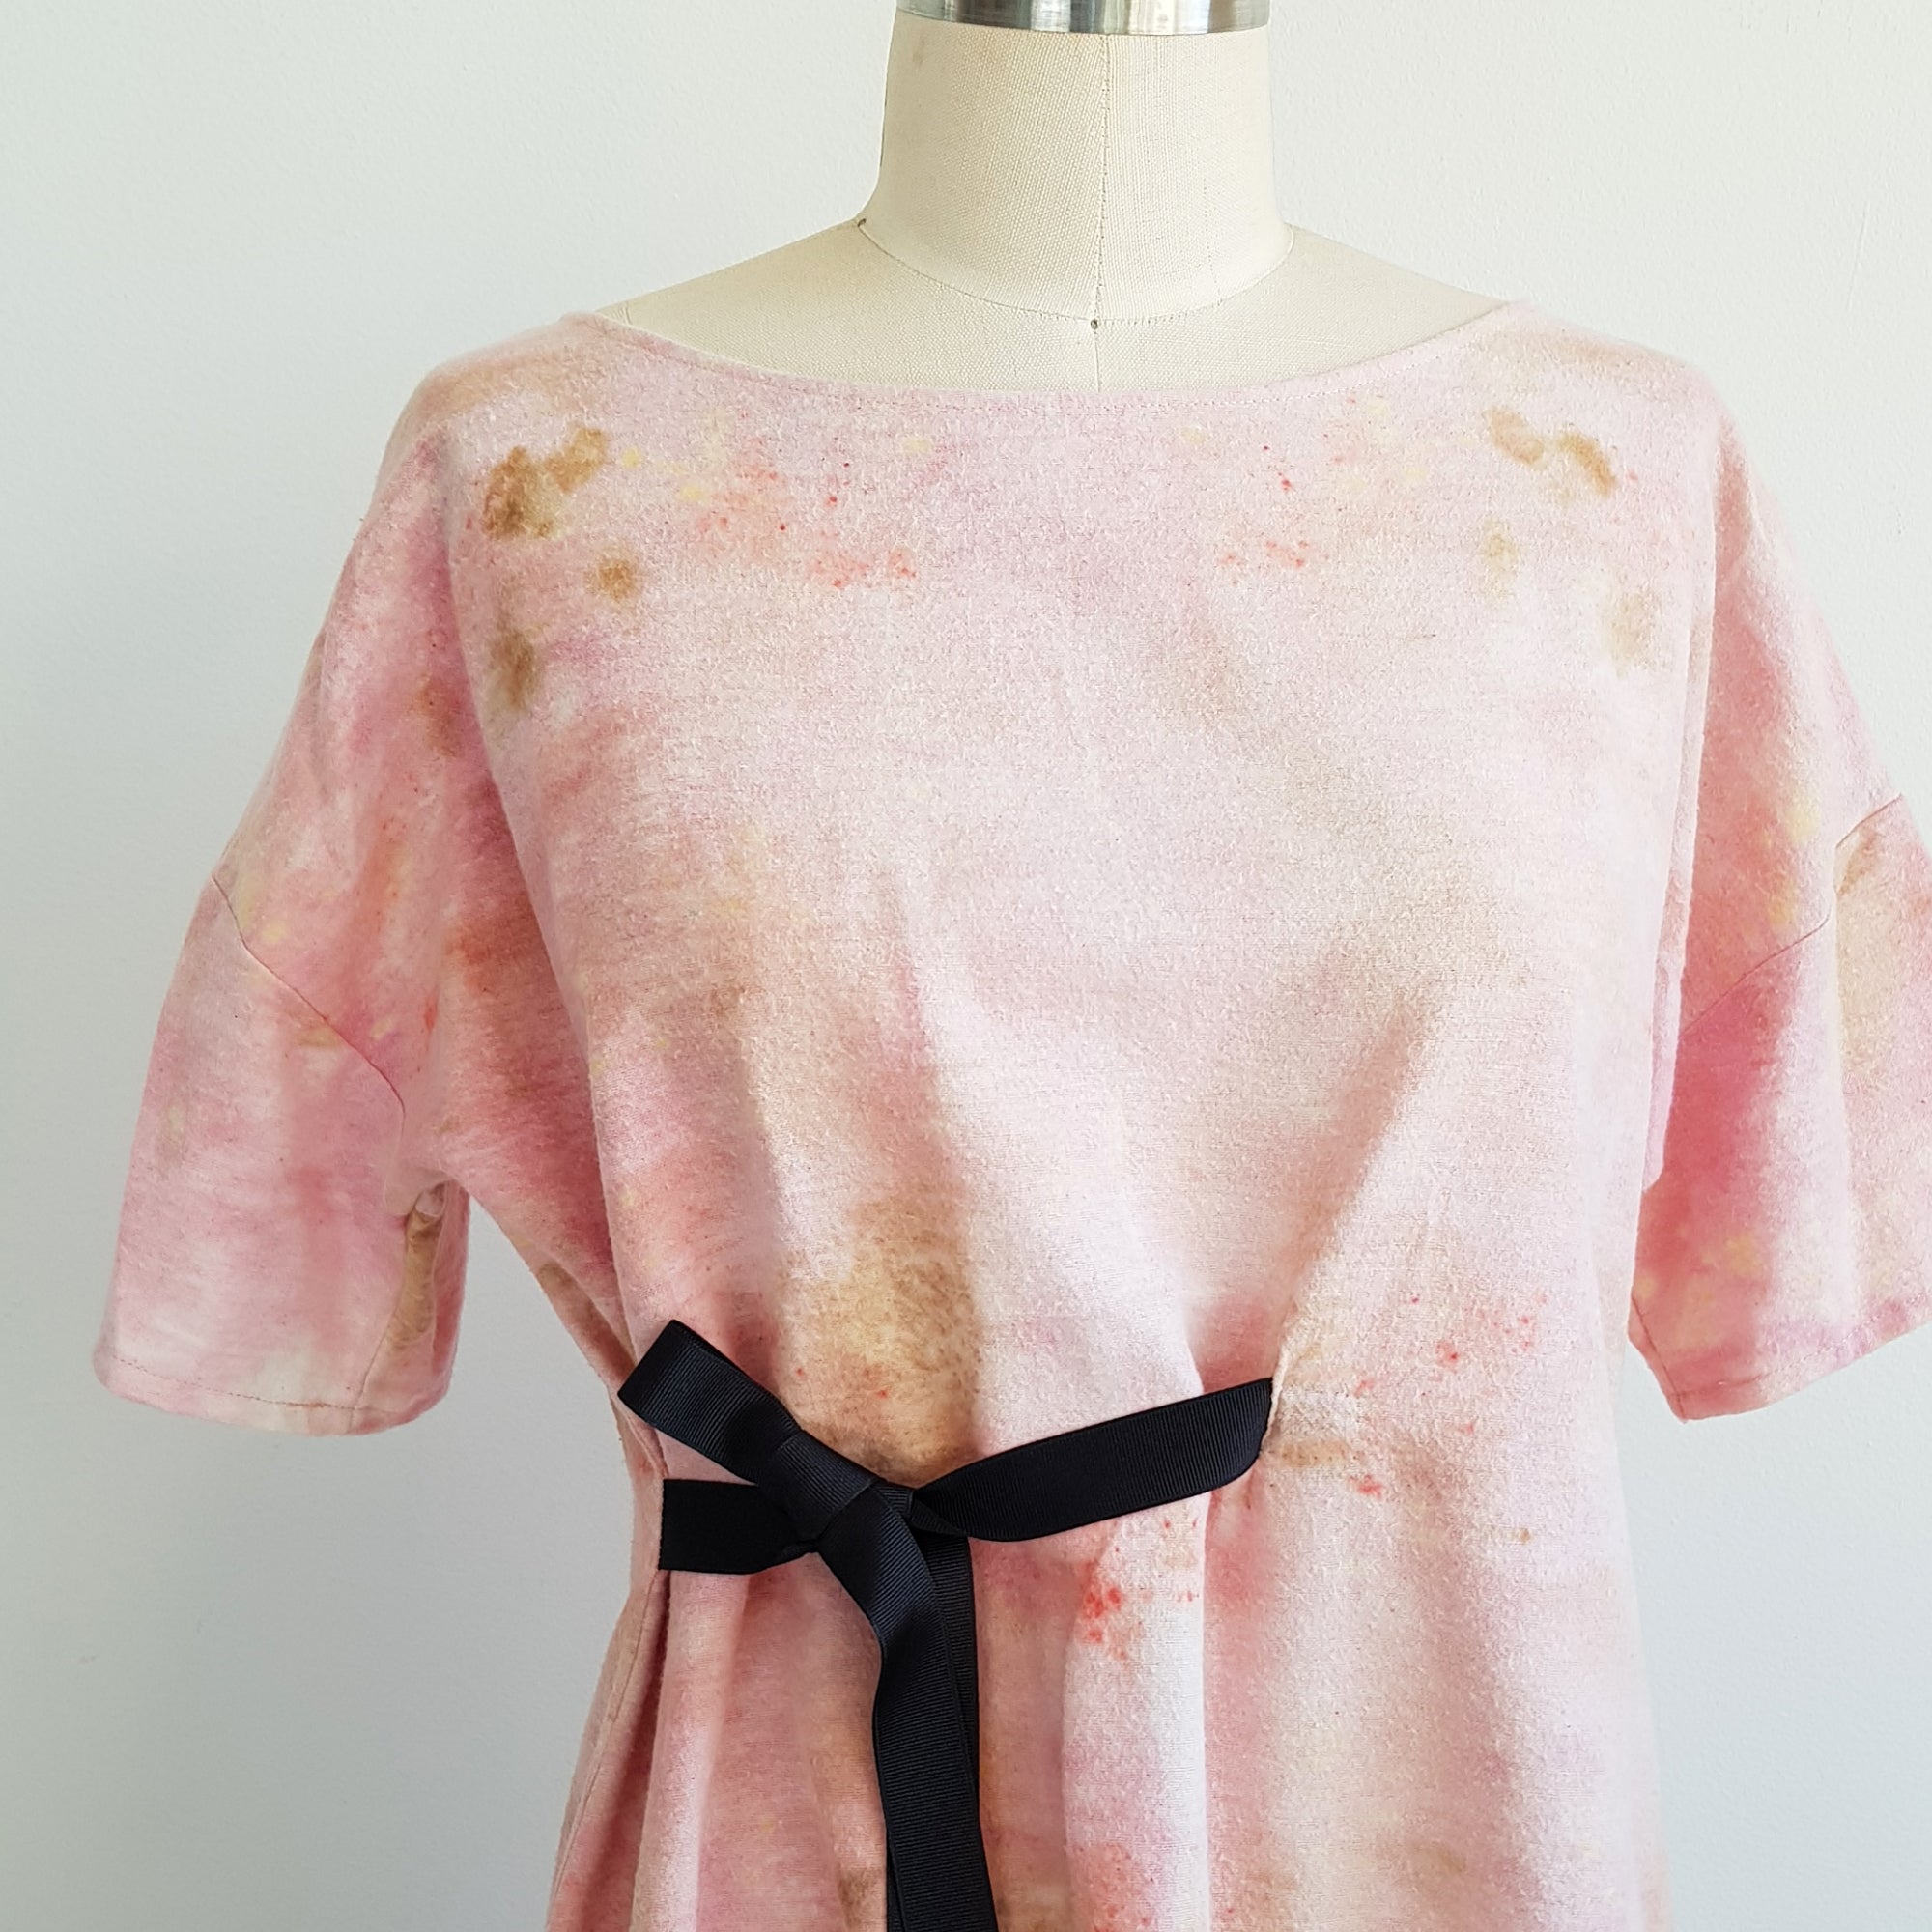 Eco Print dress xsilk prints cotton dye botanical leaf fleece –